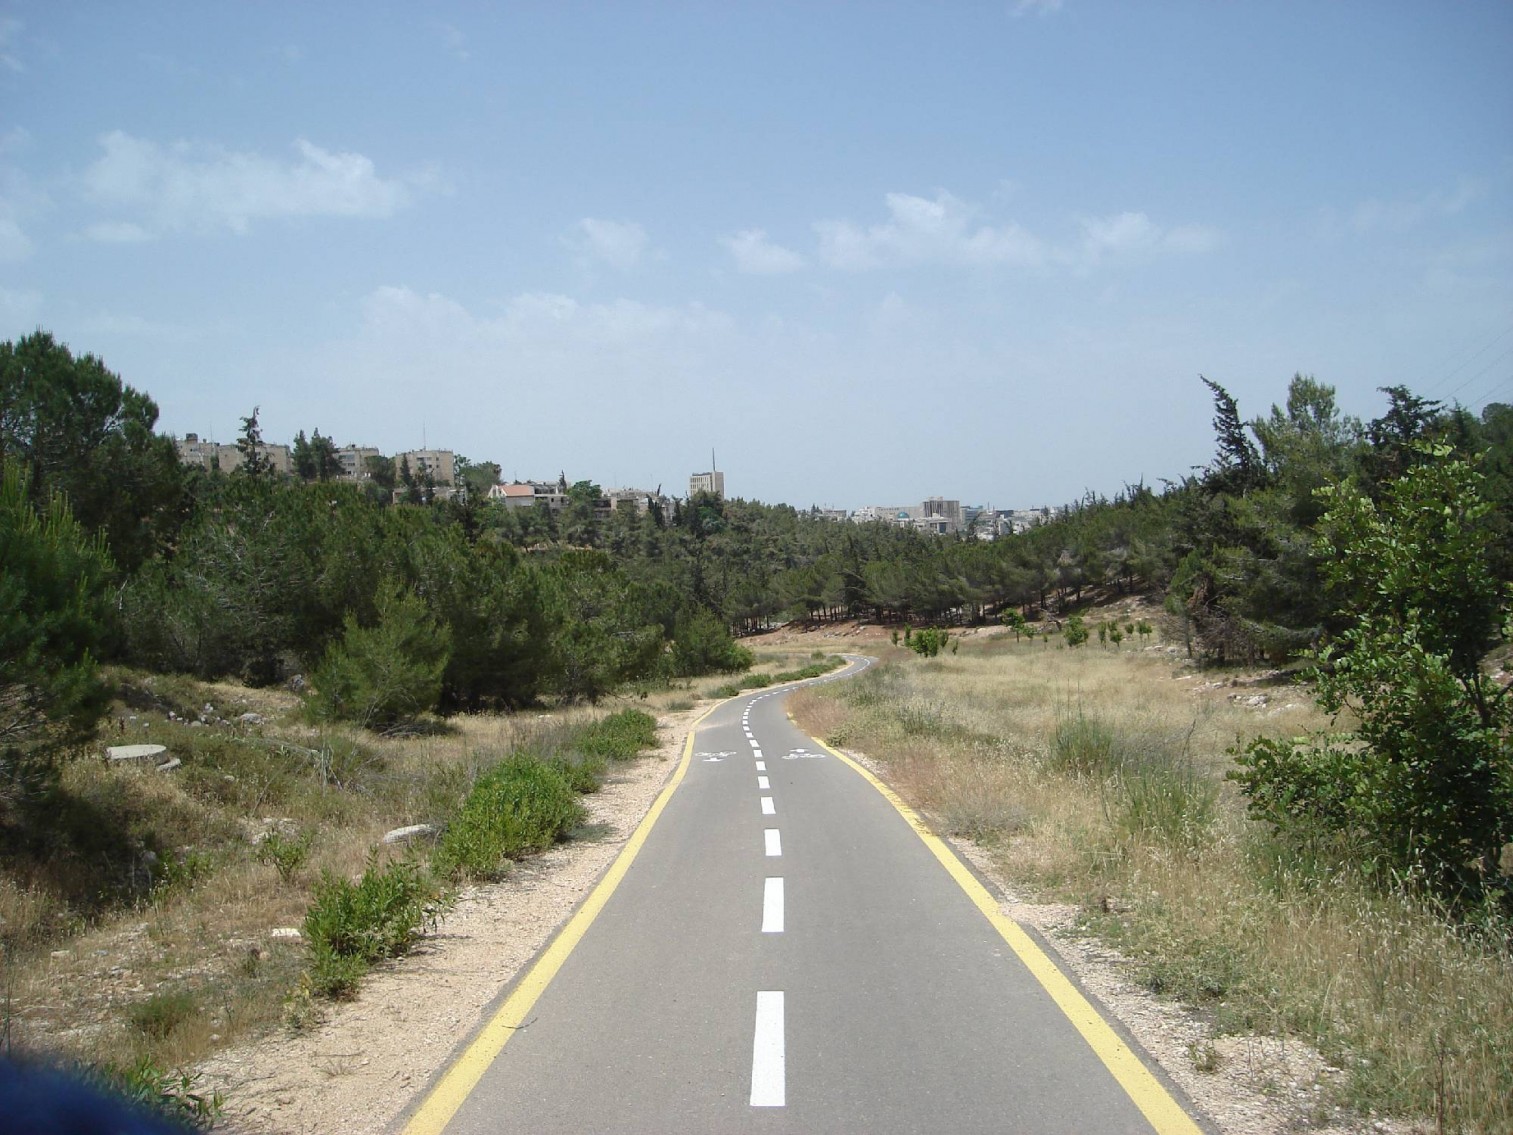 Jerusalem bike path